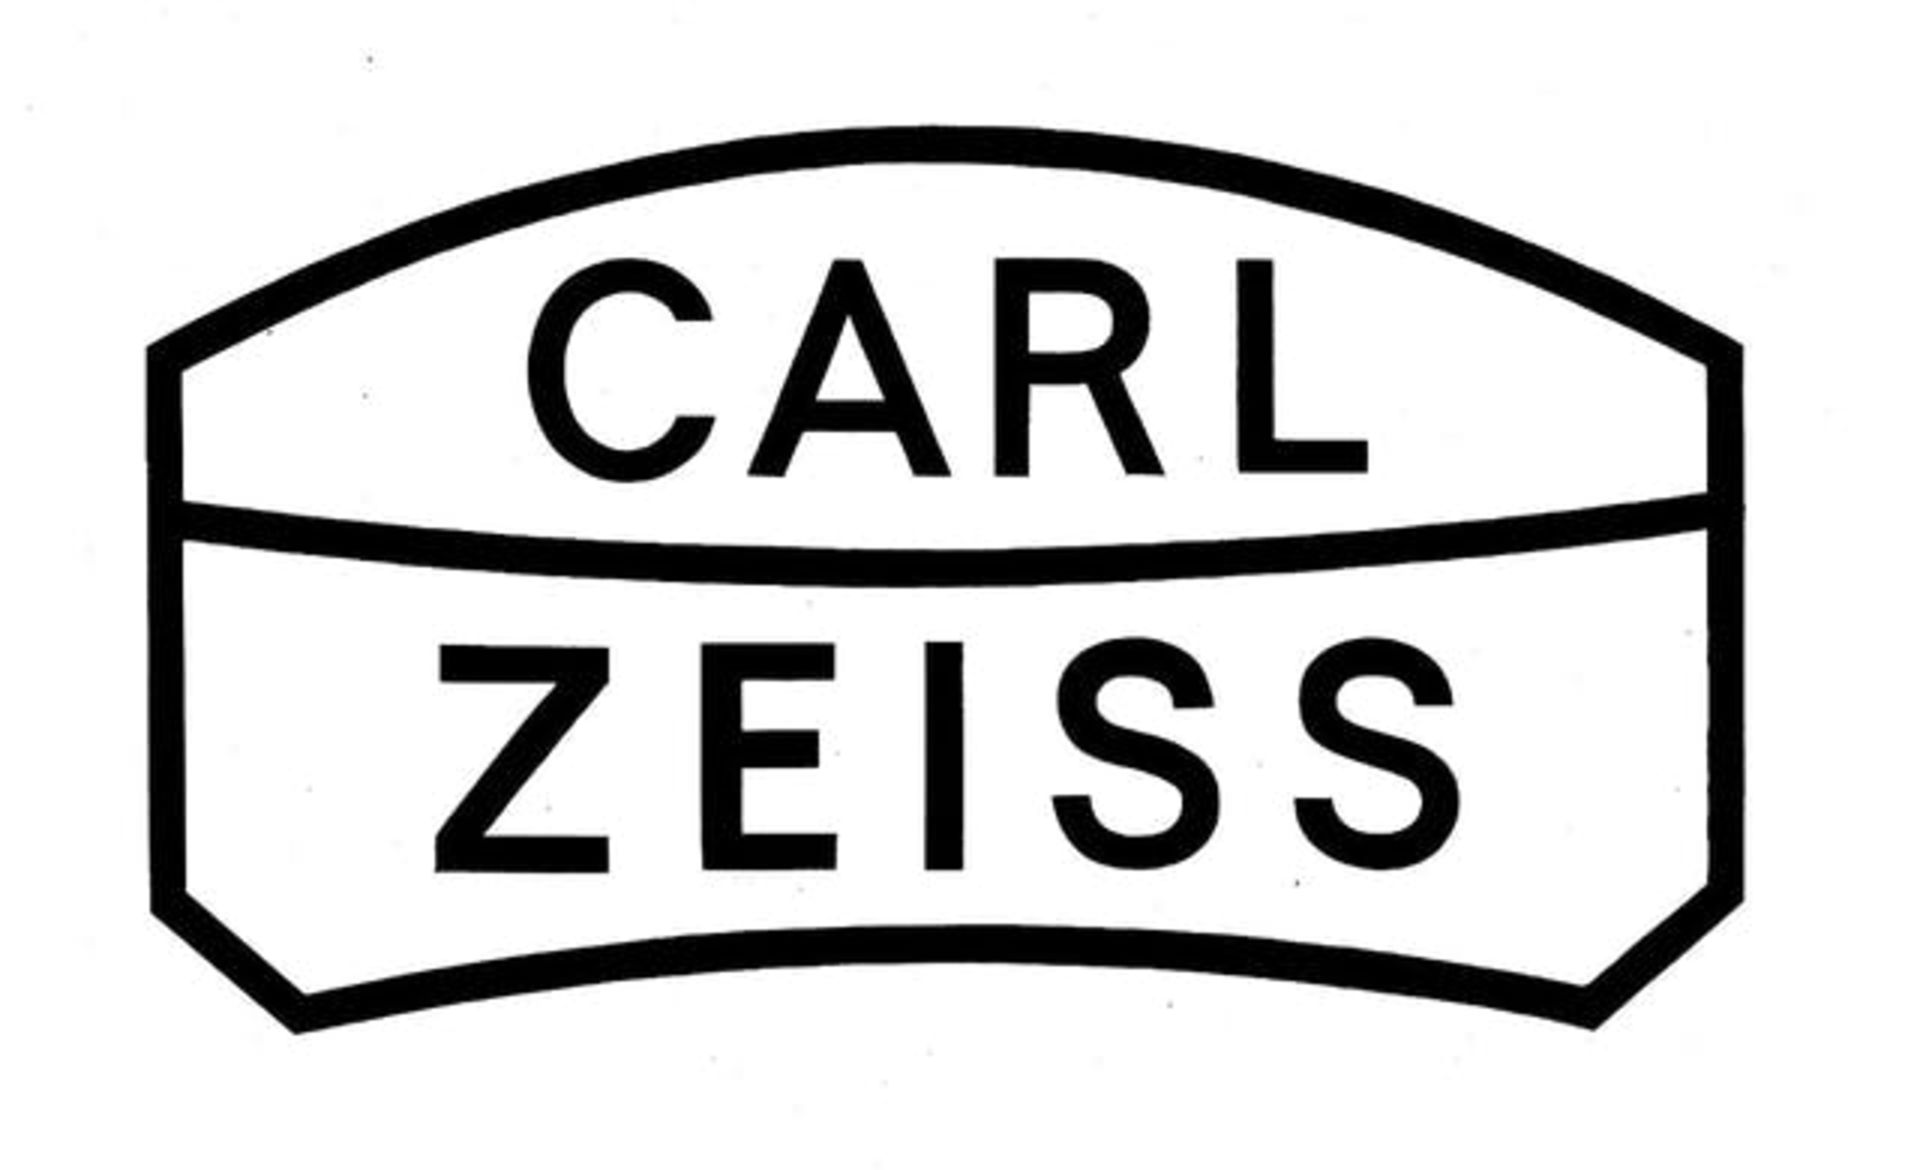 لوگوی کارل زایس / Carl Zeiss